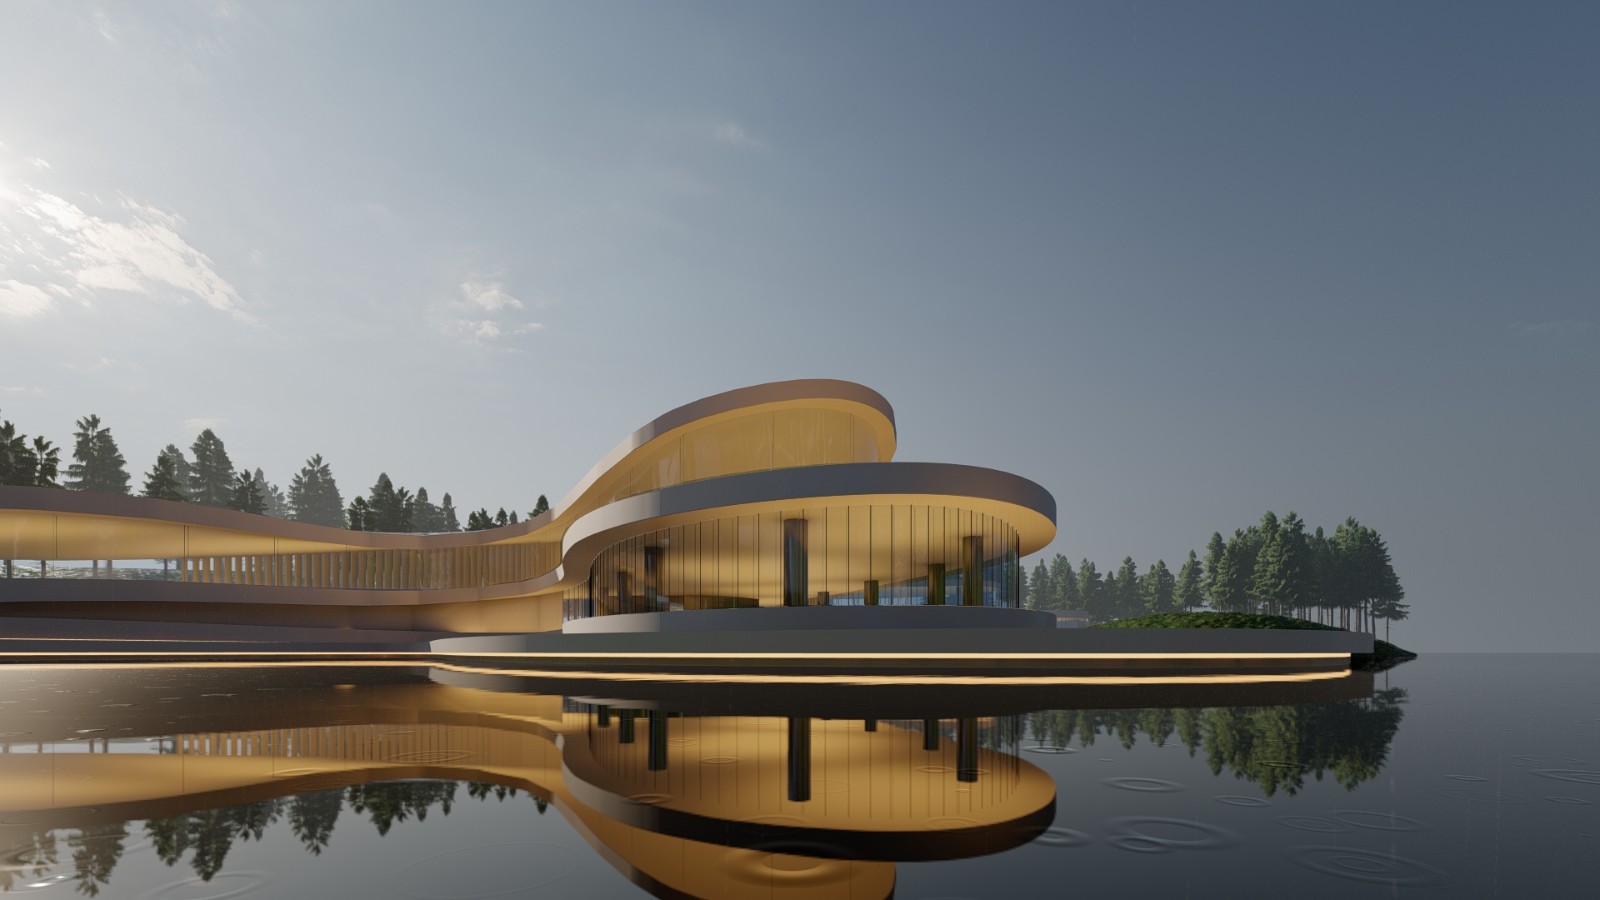 “超艺术”博物馆建筑体块概念设计